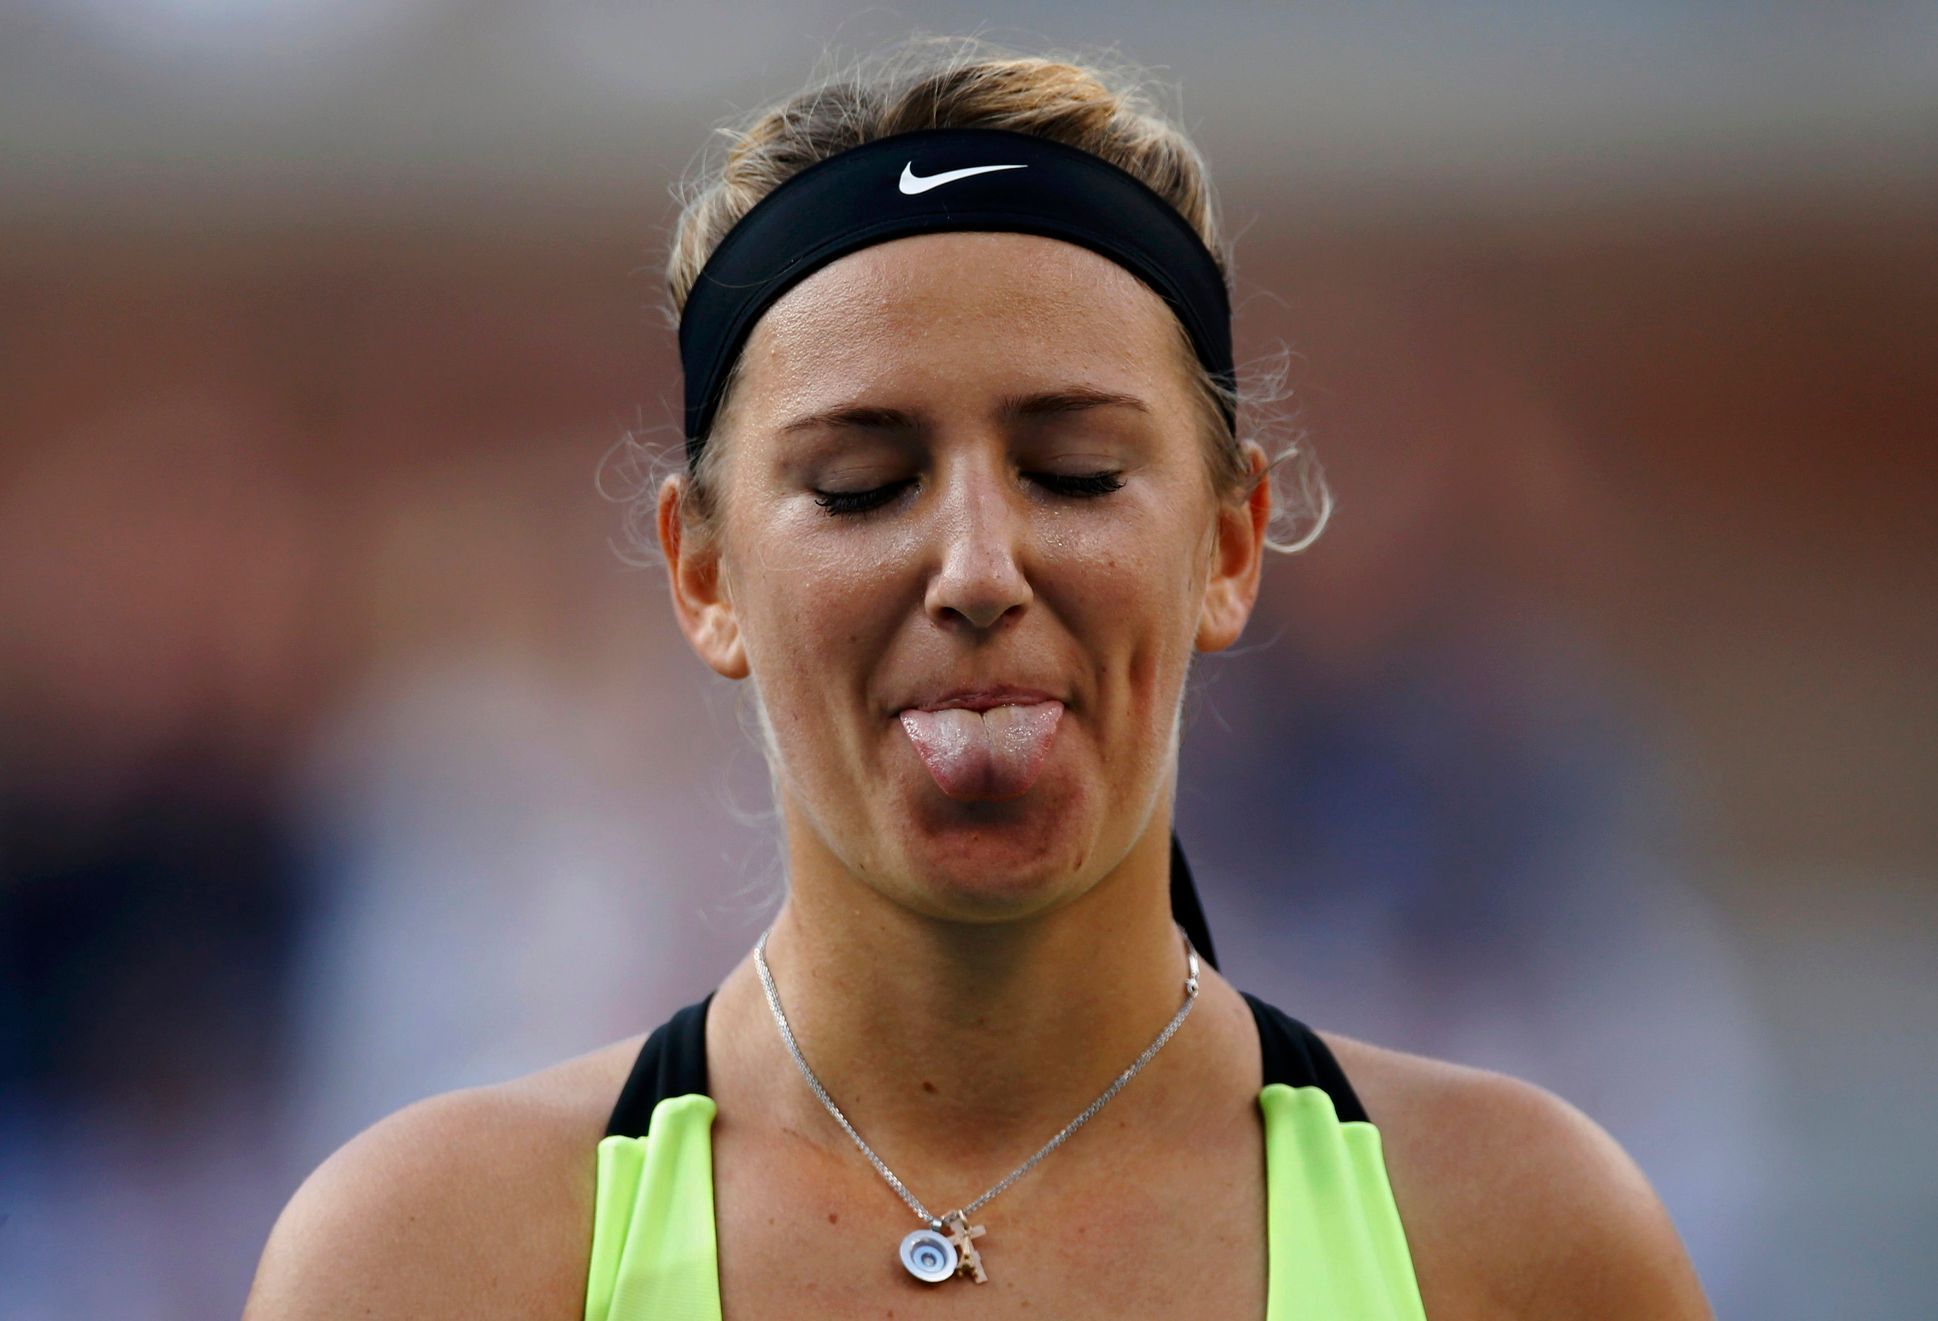 Viktoria Azarenková prohrála finále US Open 2012